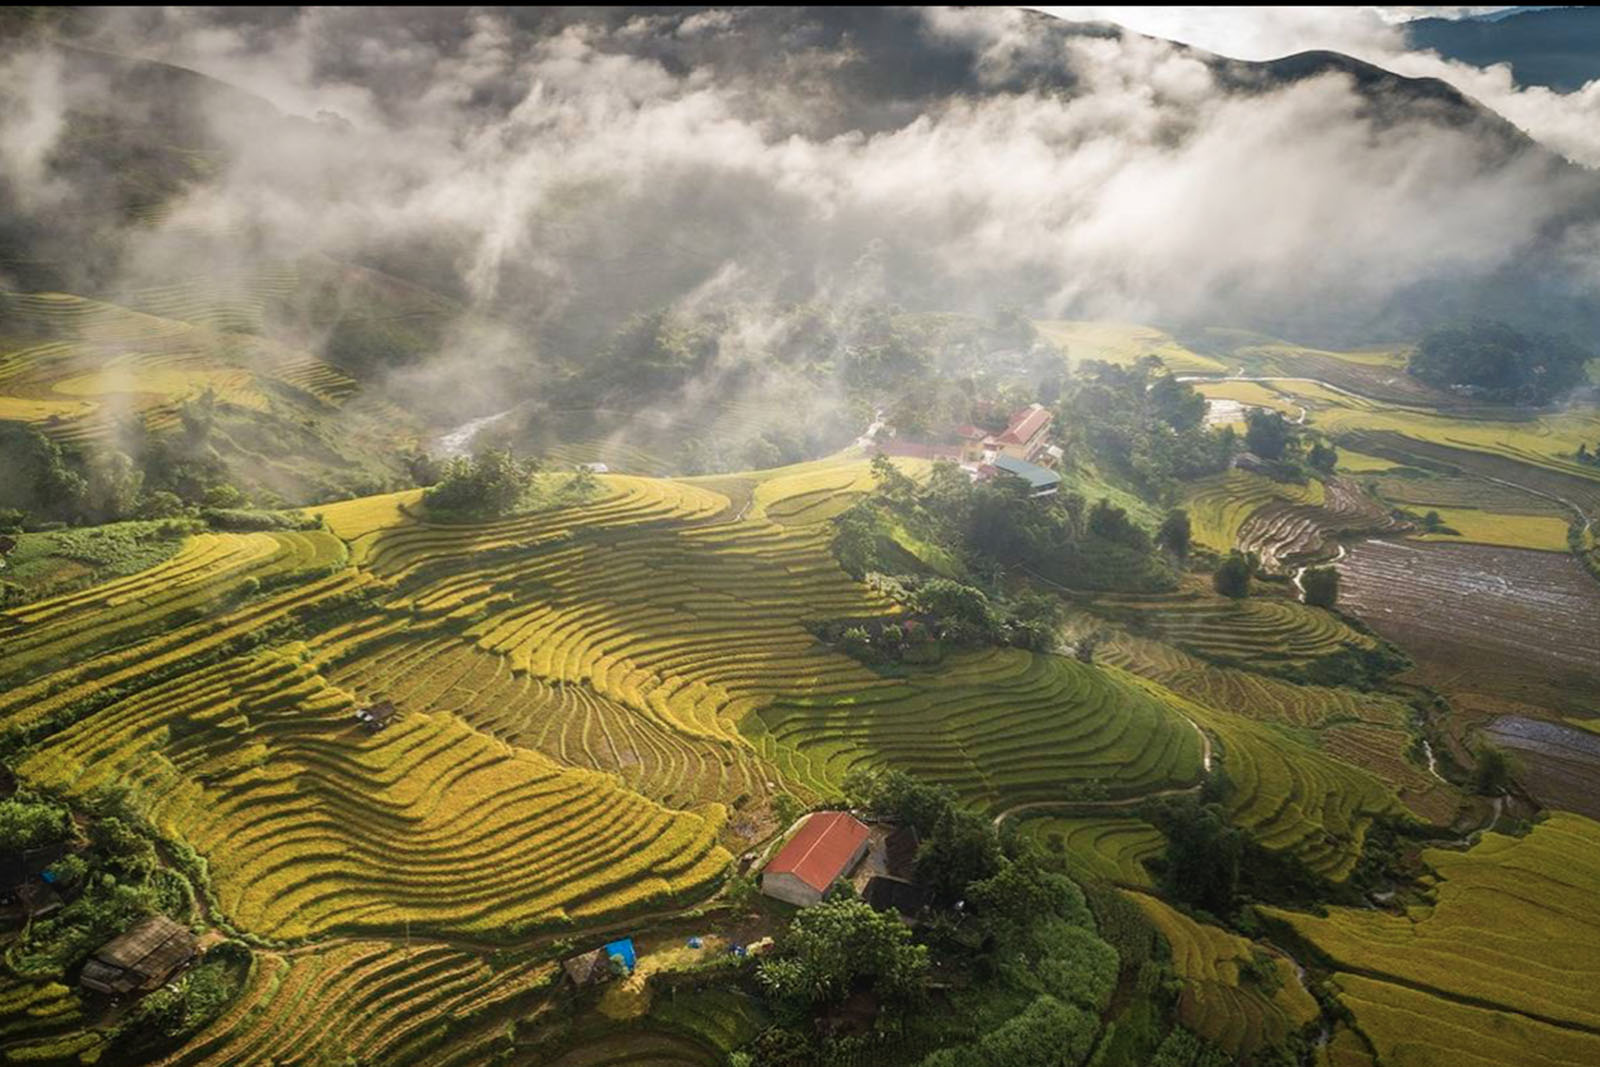 la réserve naturelle de Pu Luong offre des paysages pittoresques avec ses rizières en terrasses